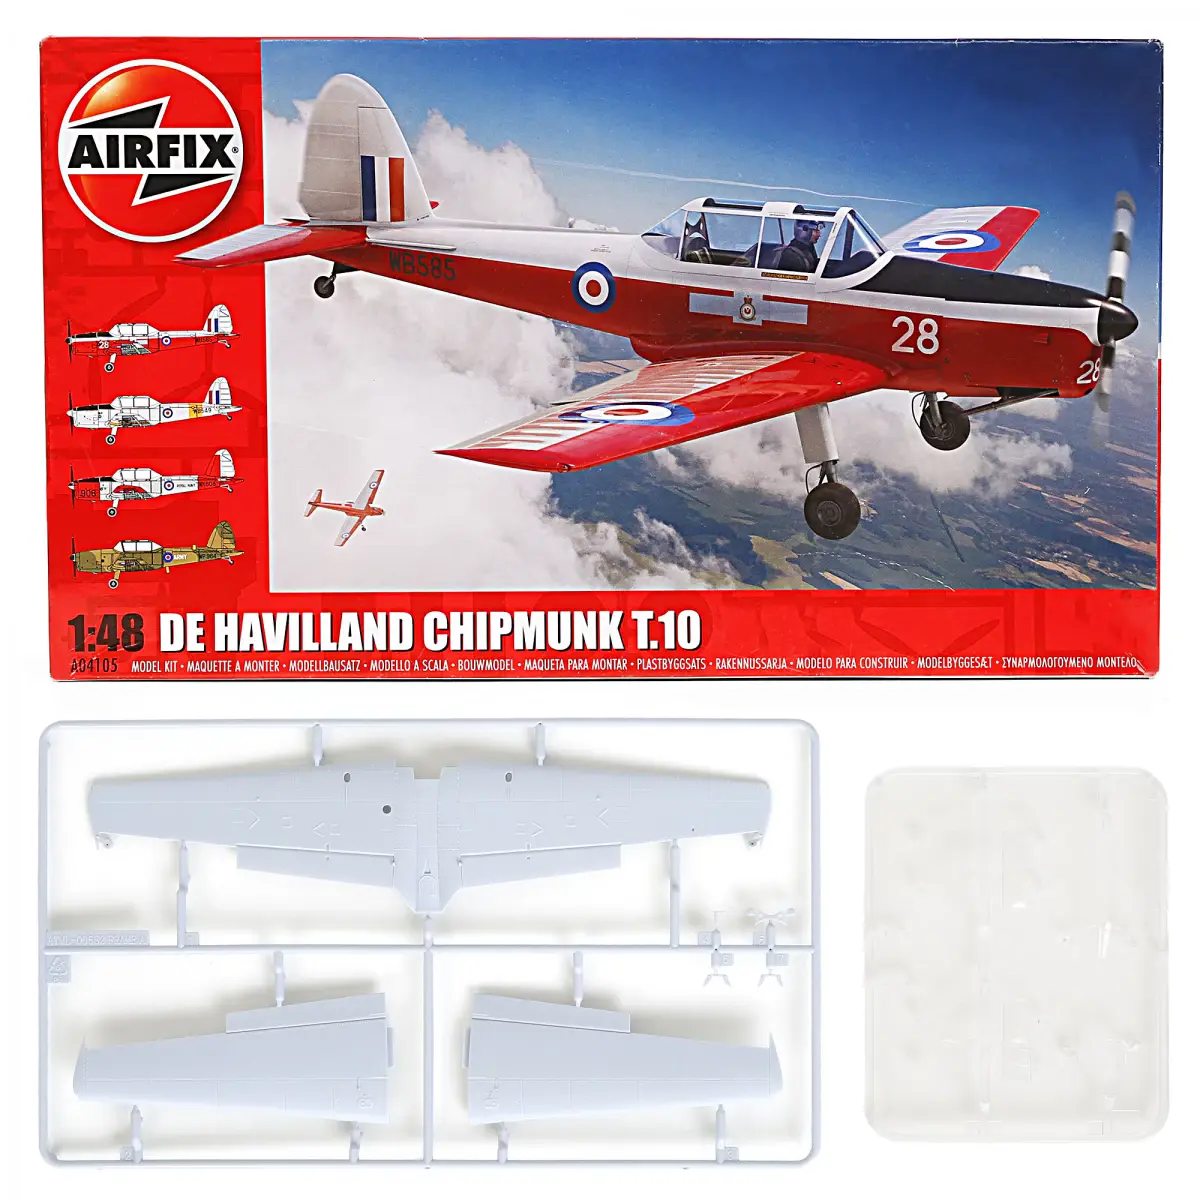 Airfix A04105 de Havilland Chipmunk T.10 1:48 Military Plastic Model Gift Set, Kids for 8Y+, Multicolour